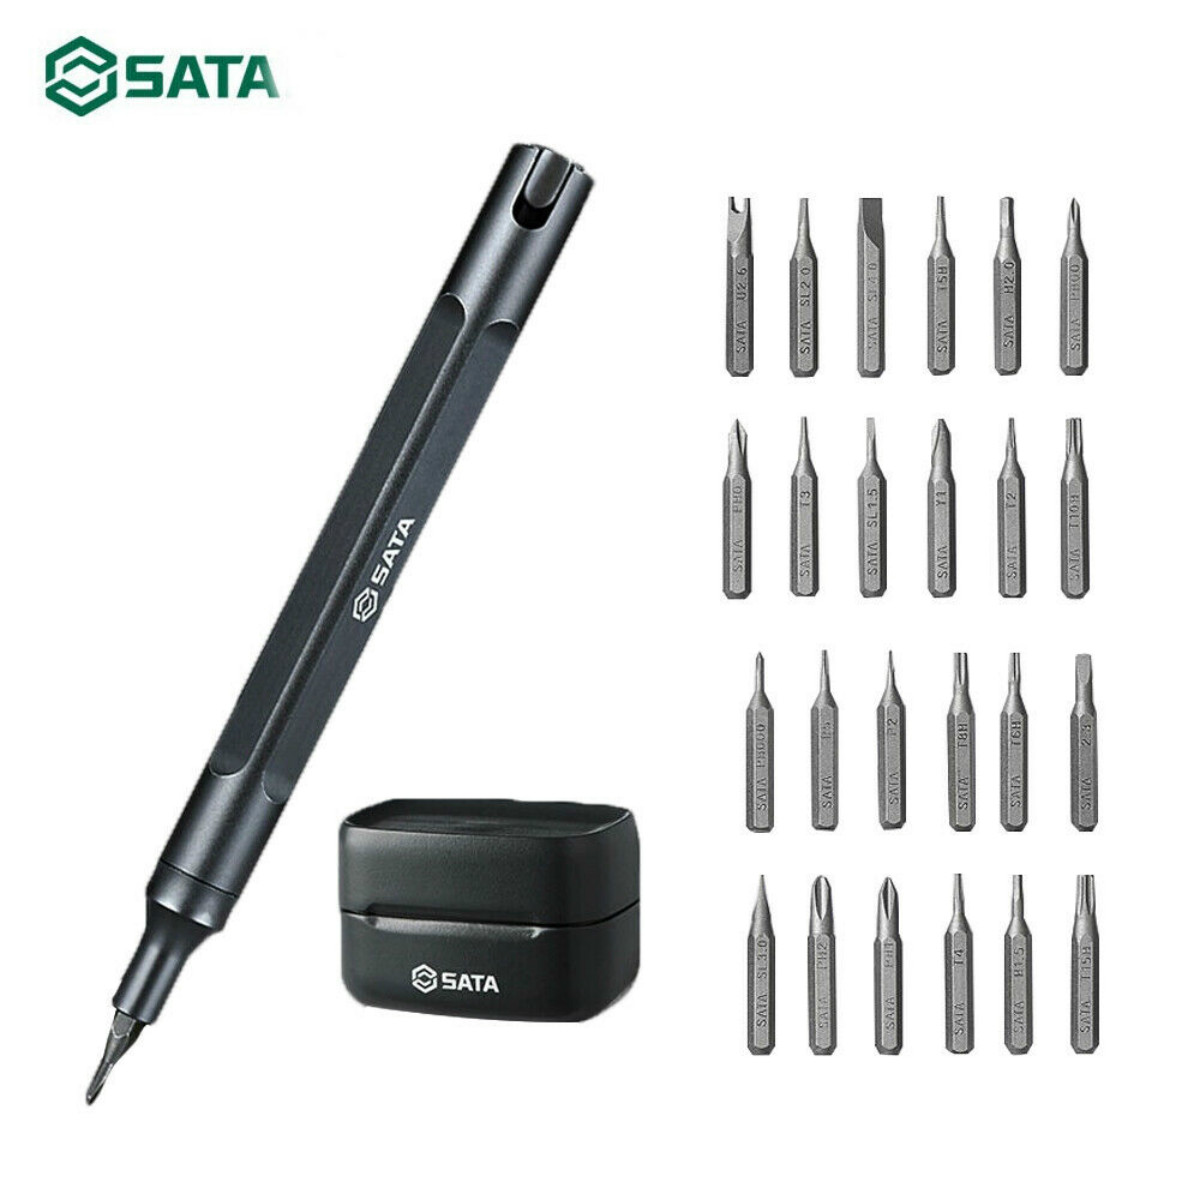 

SATA 25pcs Precision Screwdriver Kits Magnetic Multi-Bits Repair Hand Tool Set